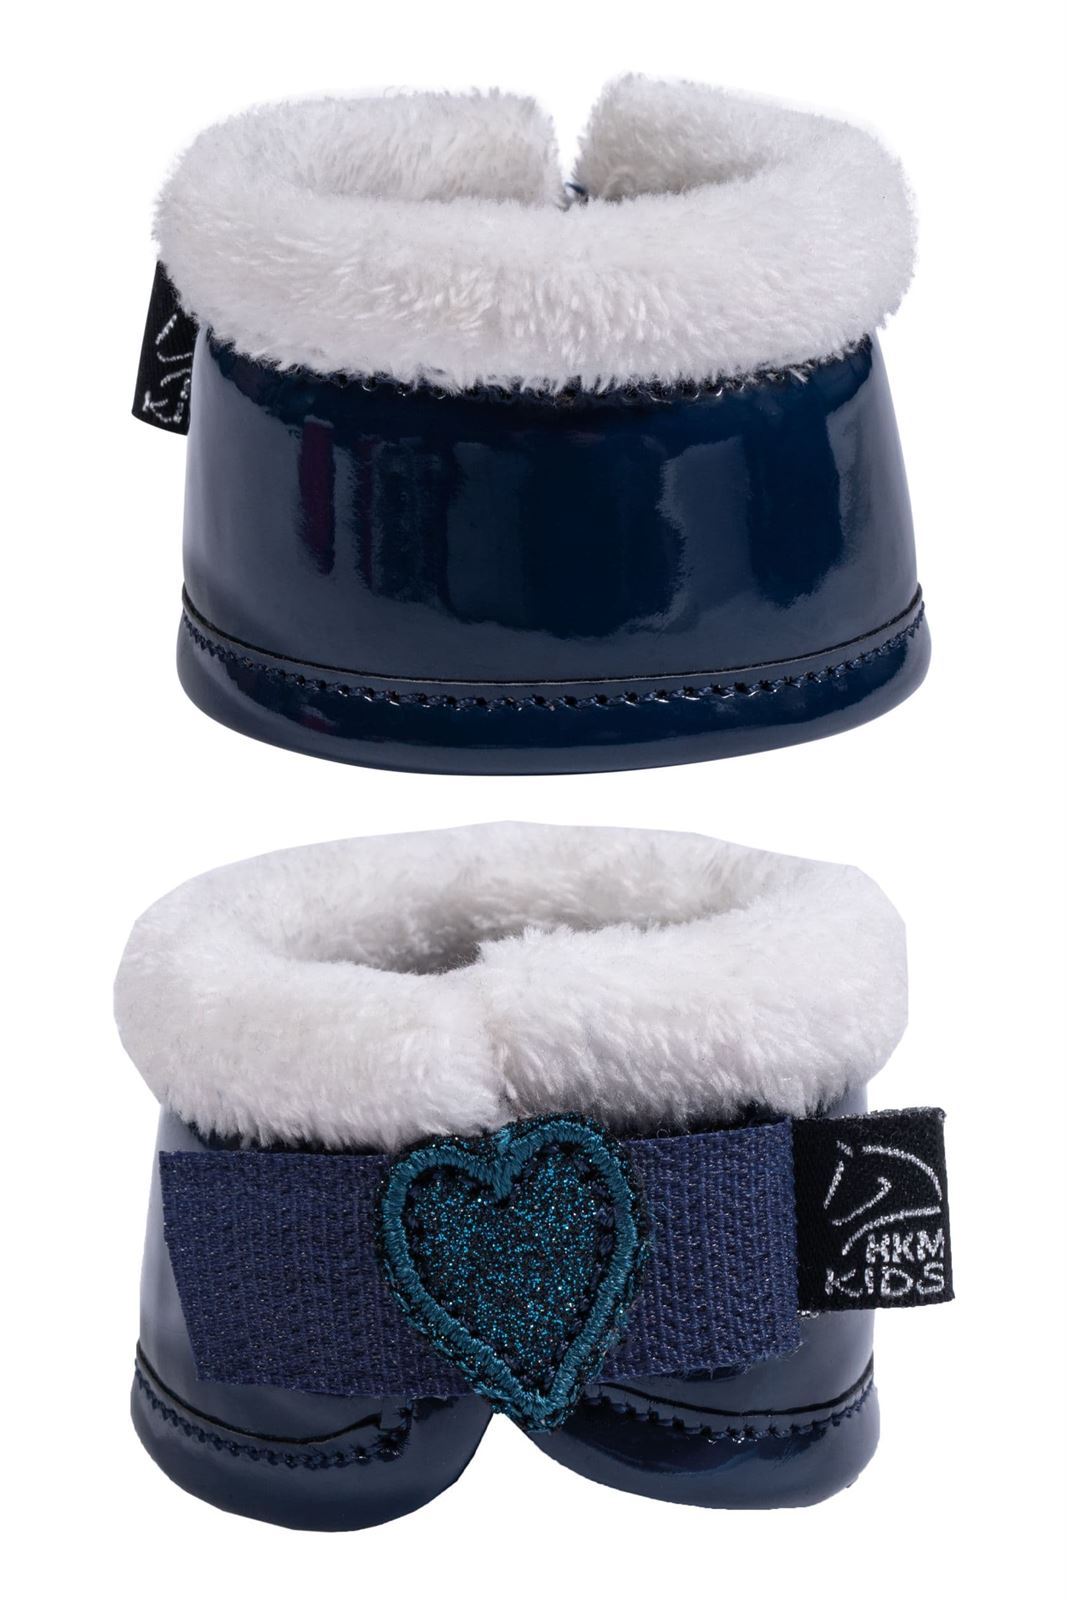 Set accesorios Cuddle pony HKM Sports Equipment Mantilla, orejeras, vendas, protectores y campanas color azul marino - Imagen 6